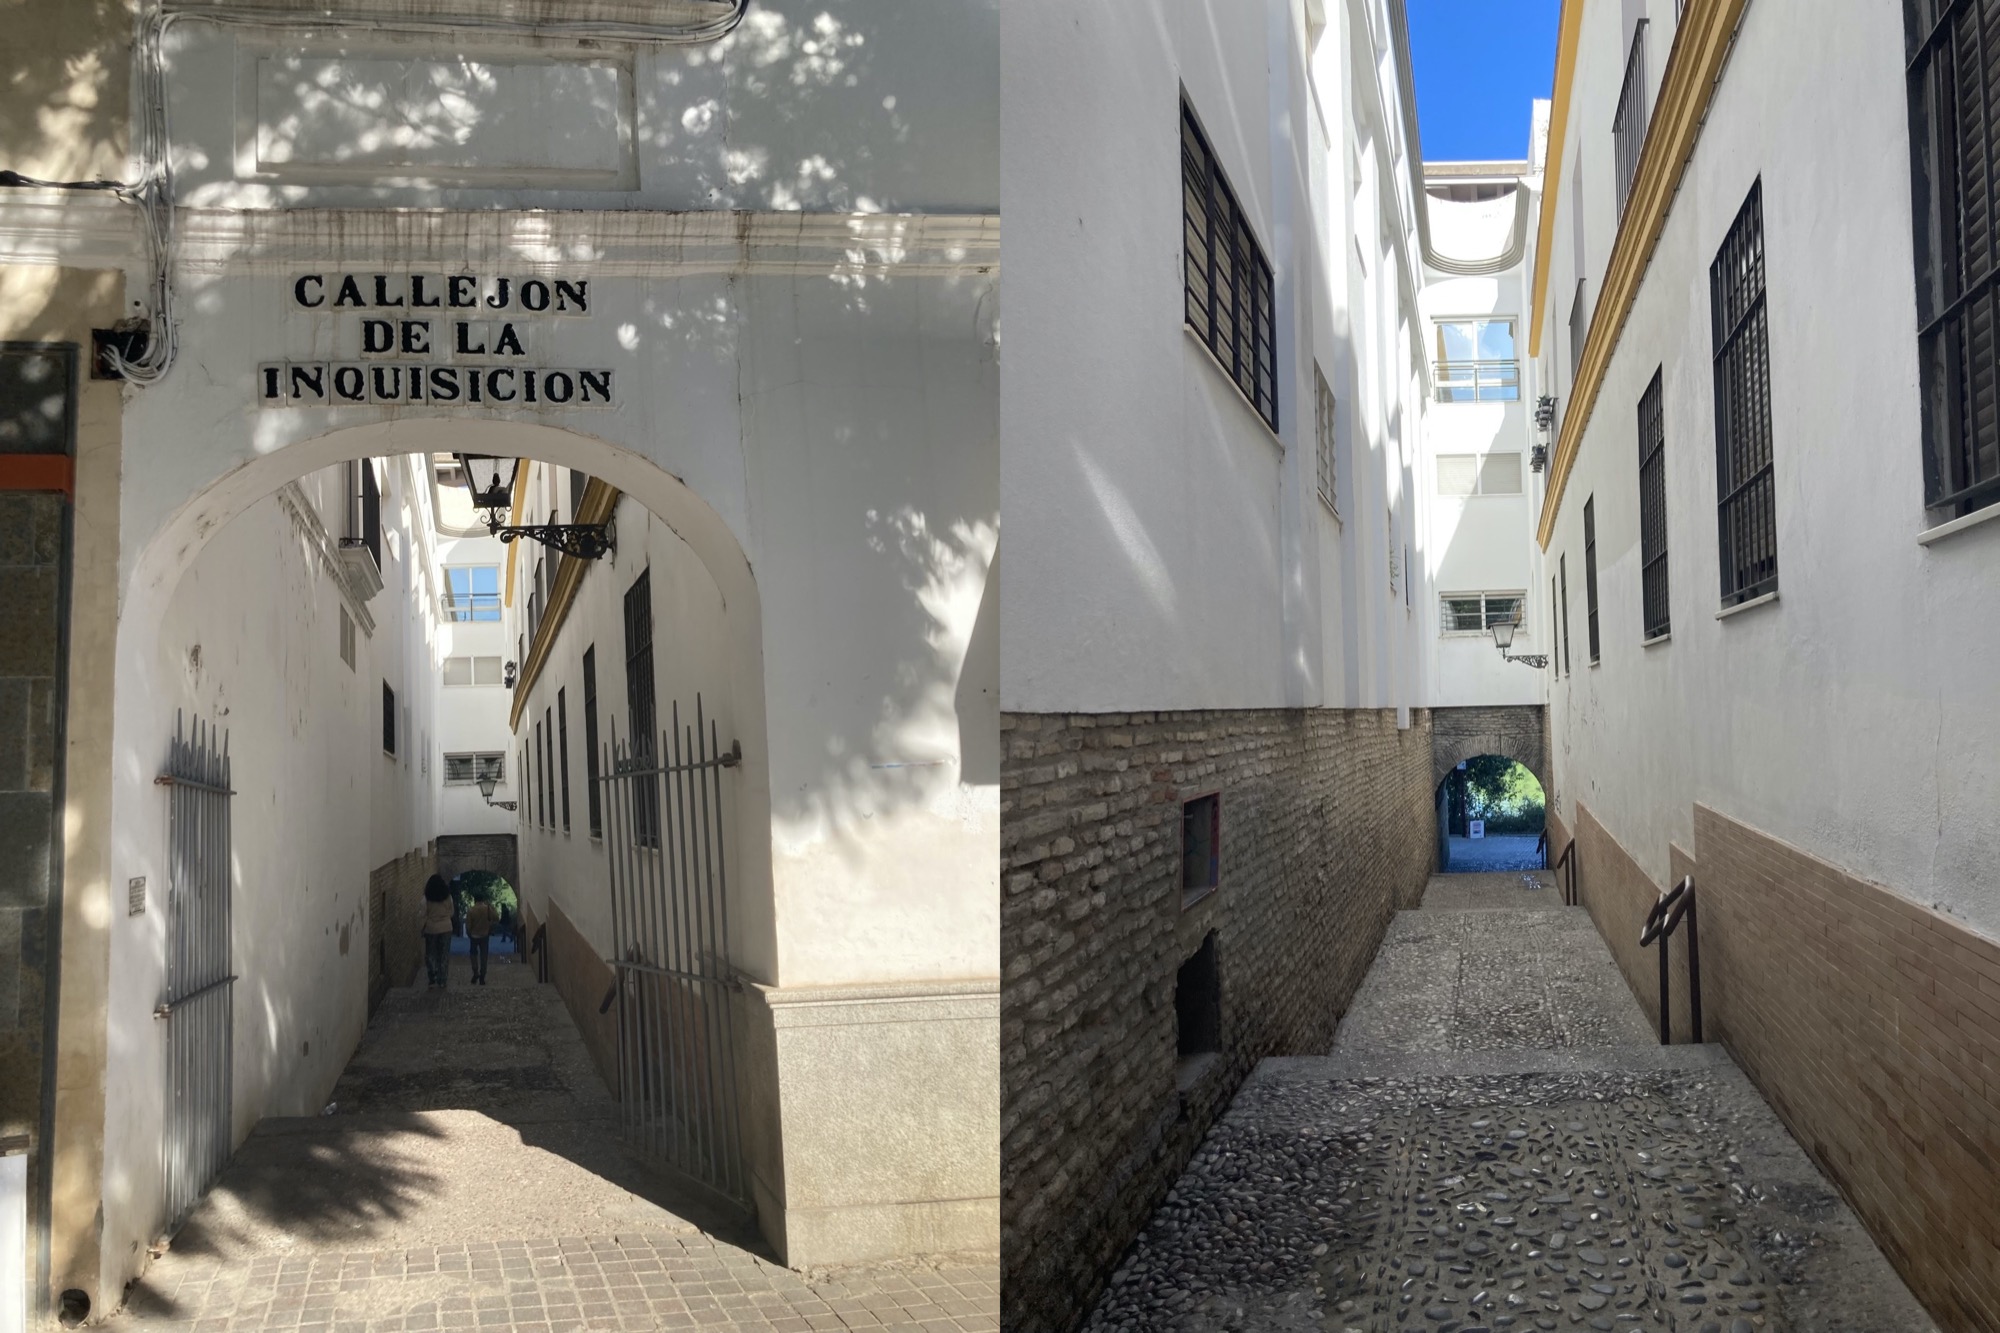 zwei Fotos einer schmalen Gasse, links ist über dem offenen Tor der Schriftzug „Callejon de la Inquisicion“ zu sehen, rechts ein paar Meter weiter in die Gasse hinein, der Boden ist mit Kieselsteinen gepflastert, es gibt nur einen Ausweg